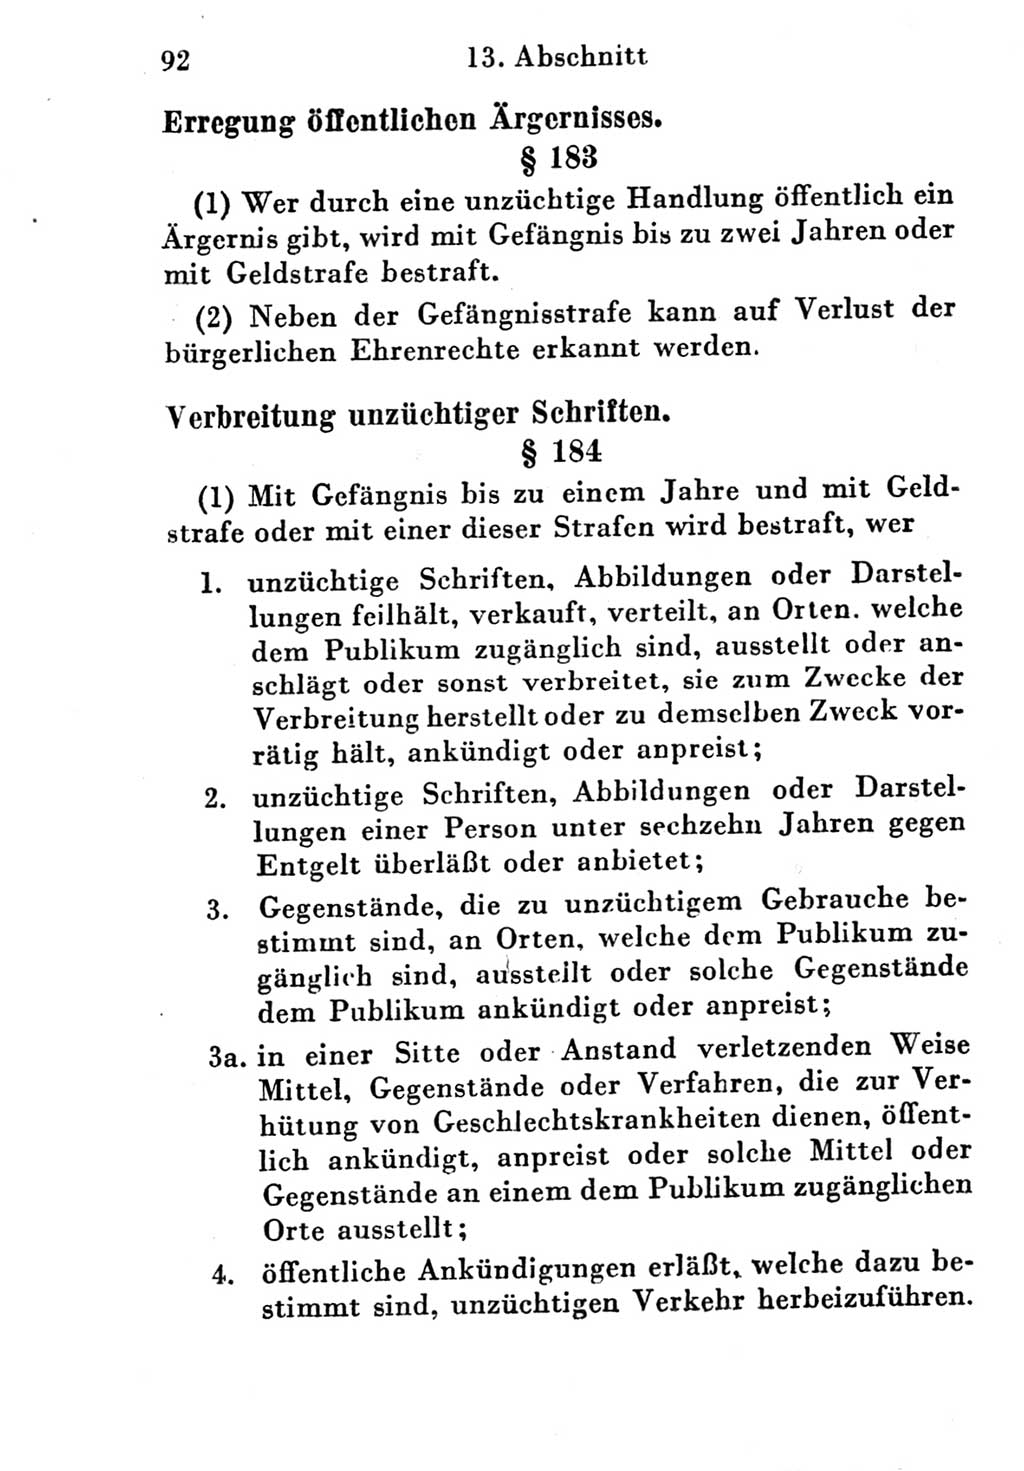 Strafgesetzbuch (StGB) und andere Strafgesetze [Deutsche Demokratische Republik (DDR)] 1951, Seite 92 (StGB Strafges. DDR 1951, S. 92)